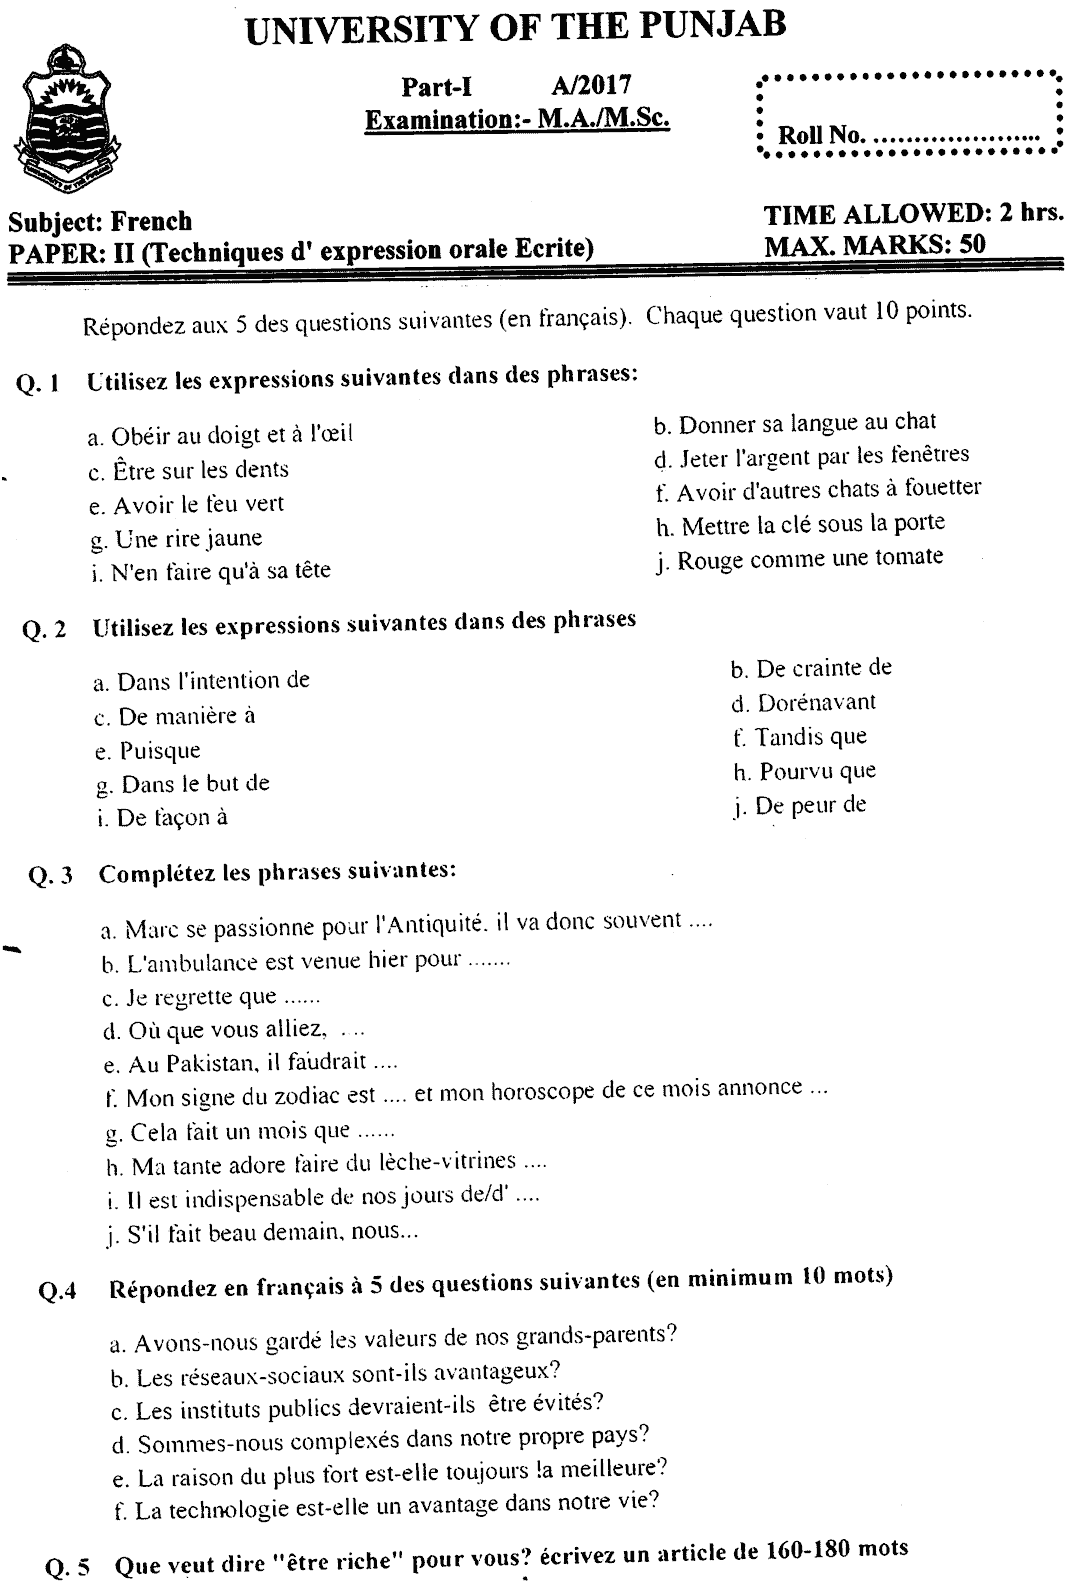 MA Part 1 French Techniques D Expression Orale Ecrite Past Paper 2017 Punjab University